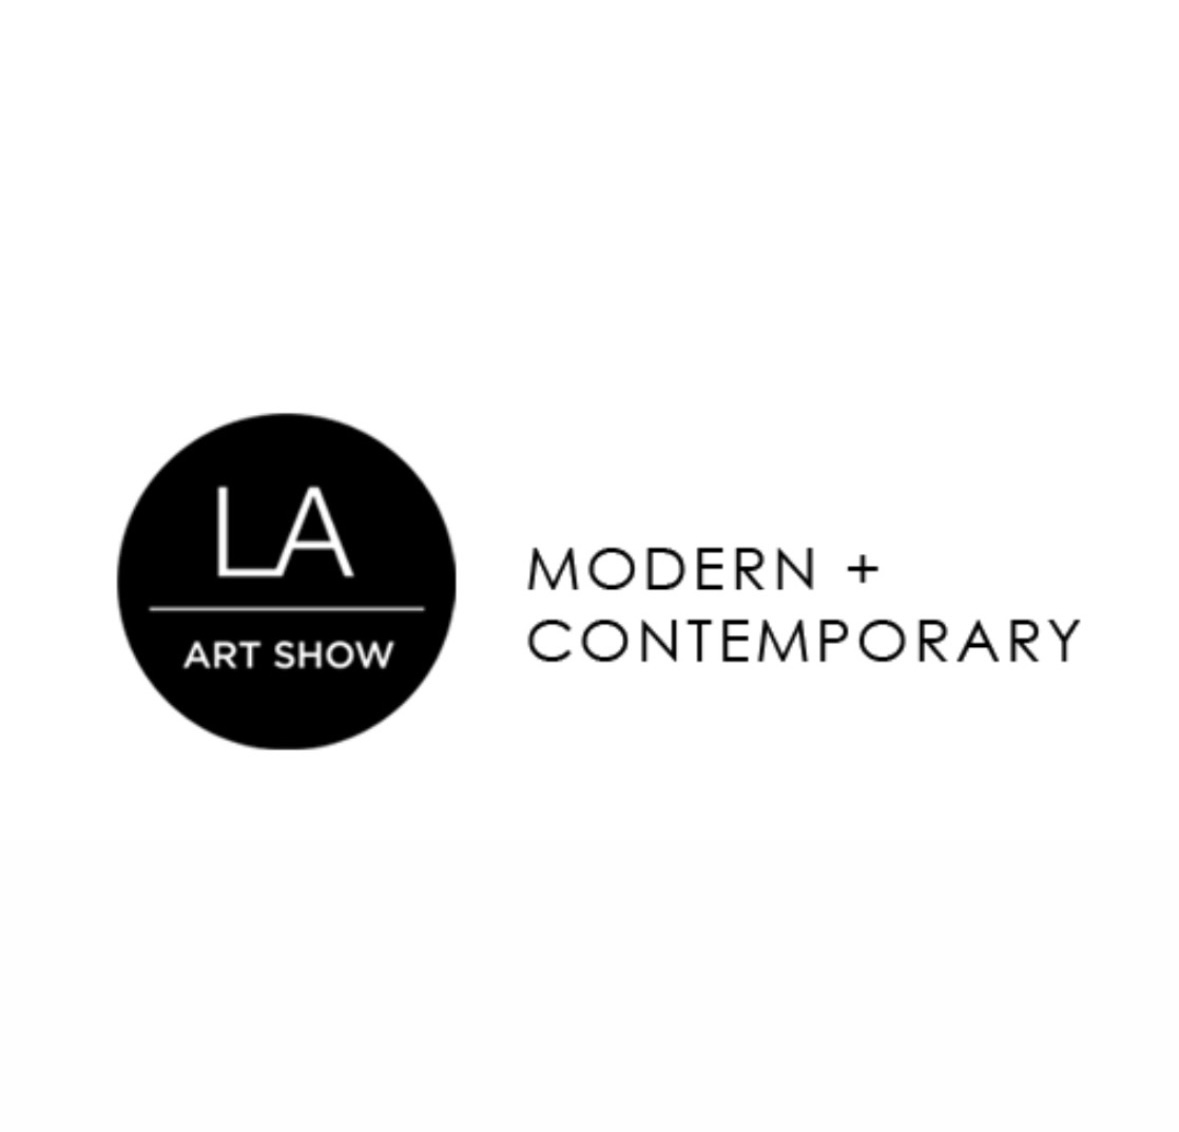 LA ART SHOW, Feb.15-19, 2023